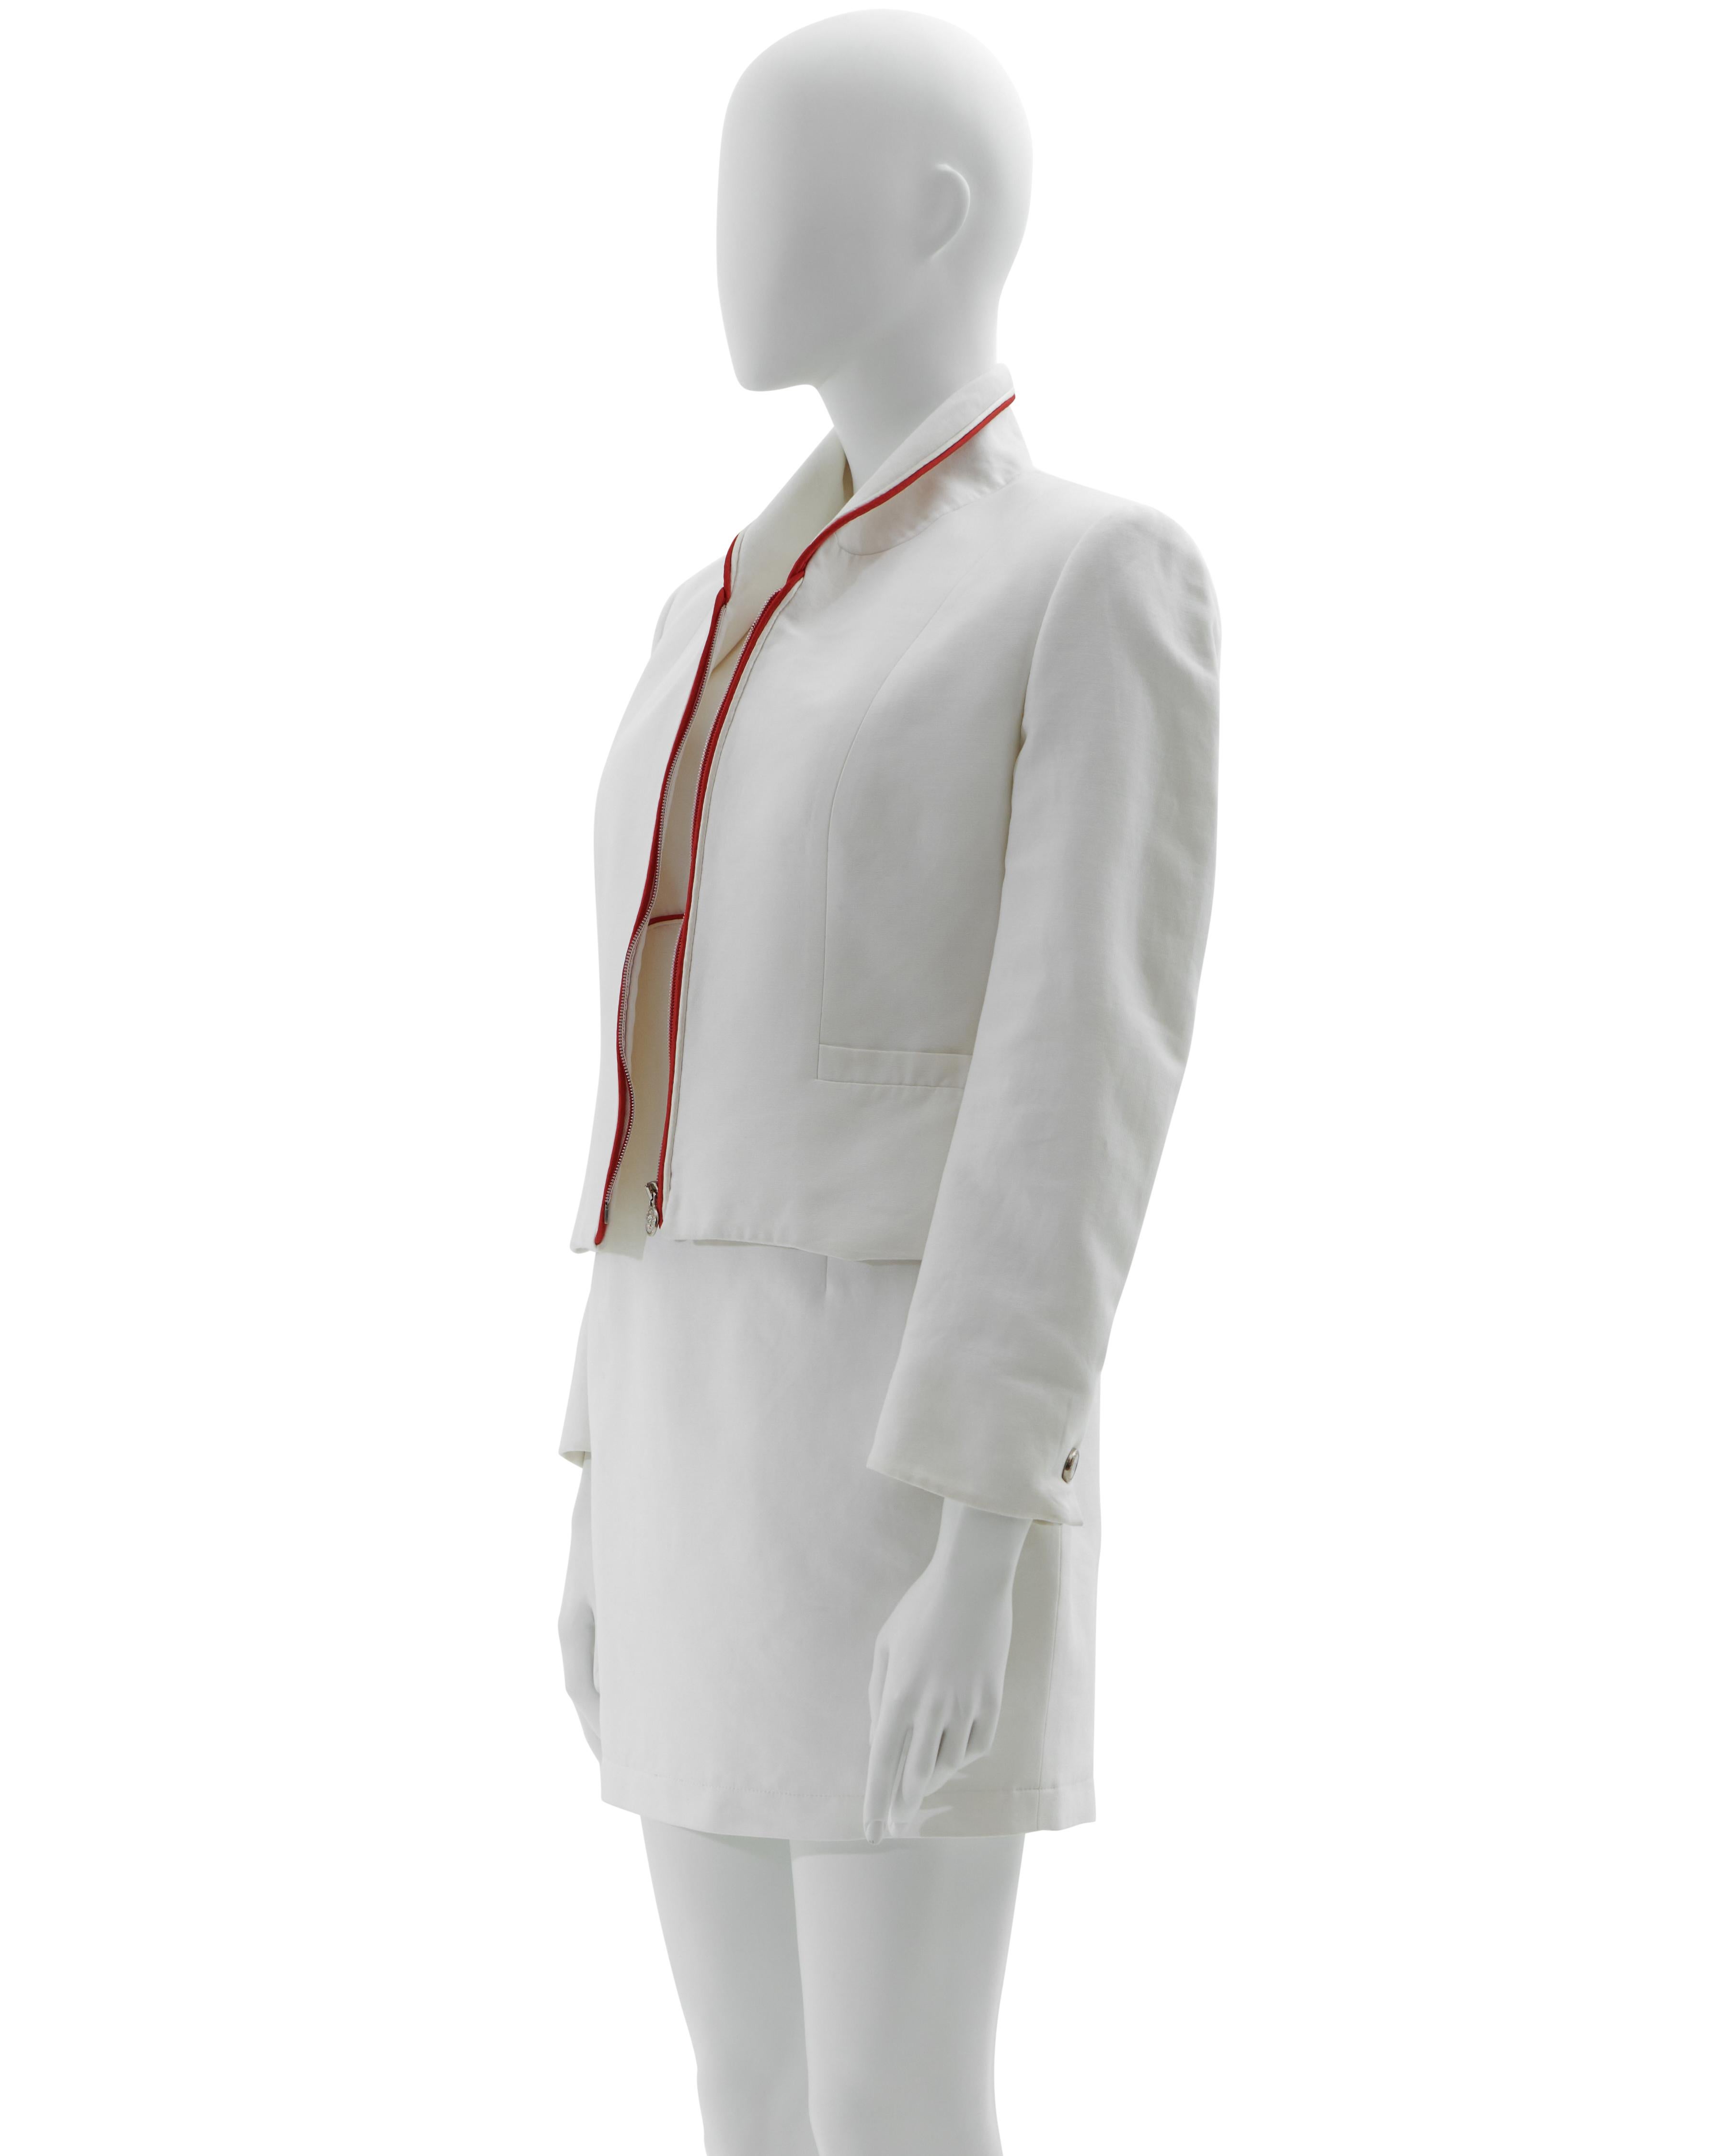 - Anfang der 1990er Jahre 
- Verkauft von Skof.Archive
- Entworfen von Gianni Versace
- Versus von Gianni Versace
- Weißer Baumwollstoff mit rotem Profil - Jacke und Kleid im Set
- Medusa-Reißverschluss an der Vorderseite der Jacke
- Kleid mit